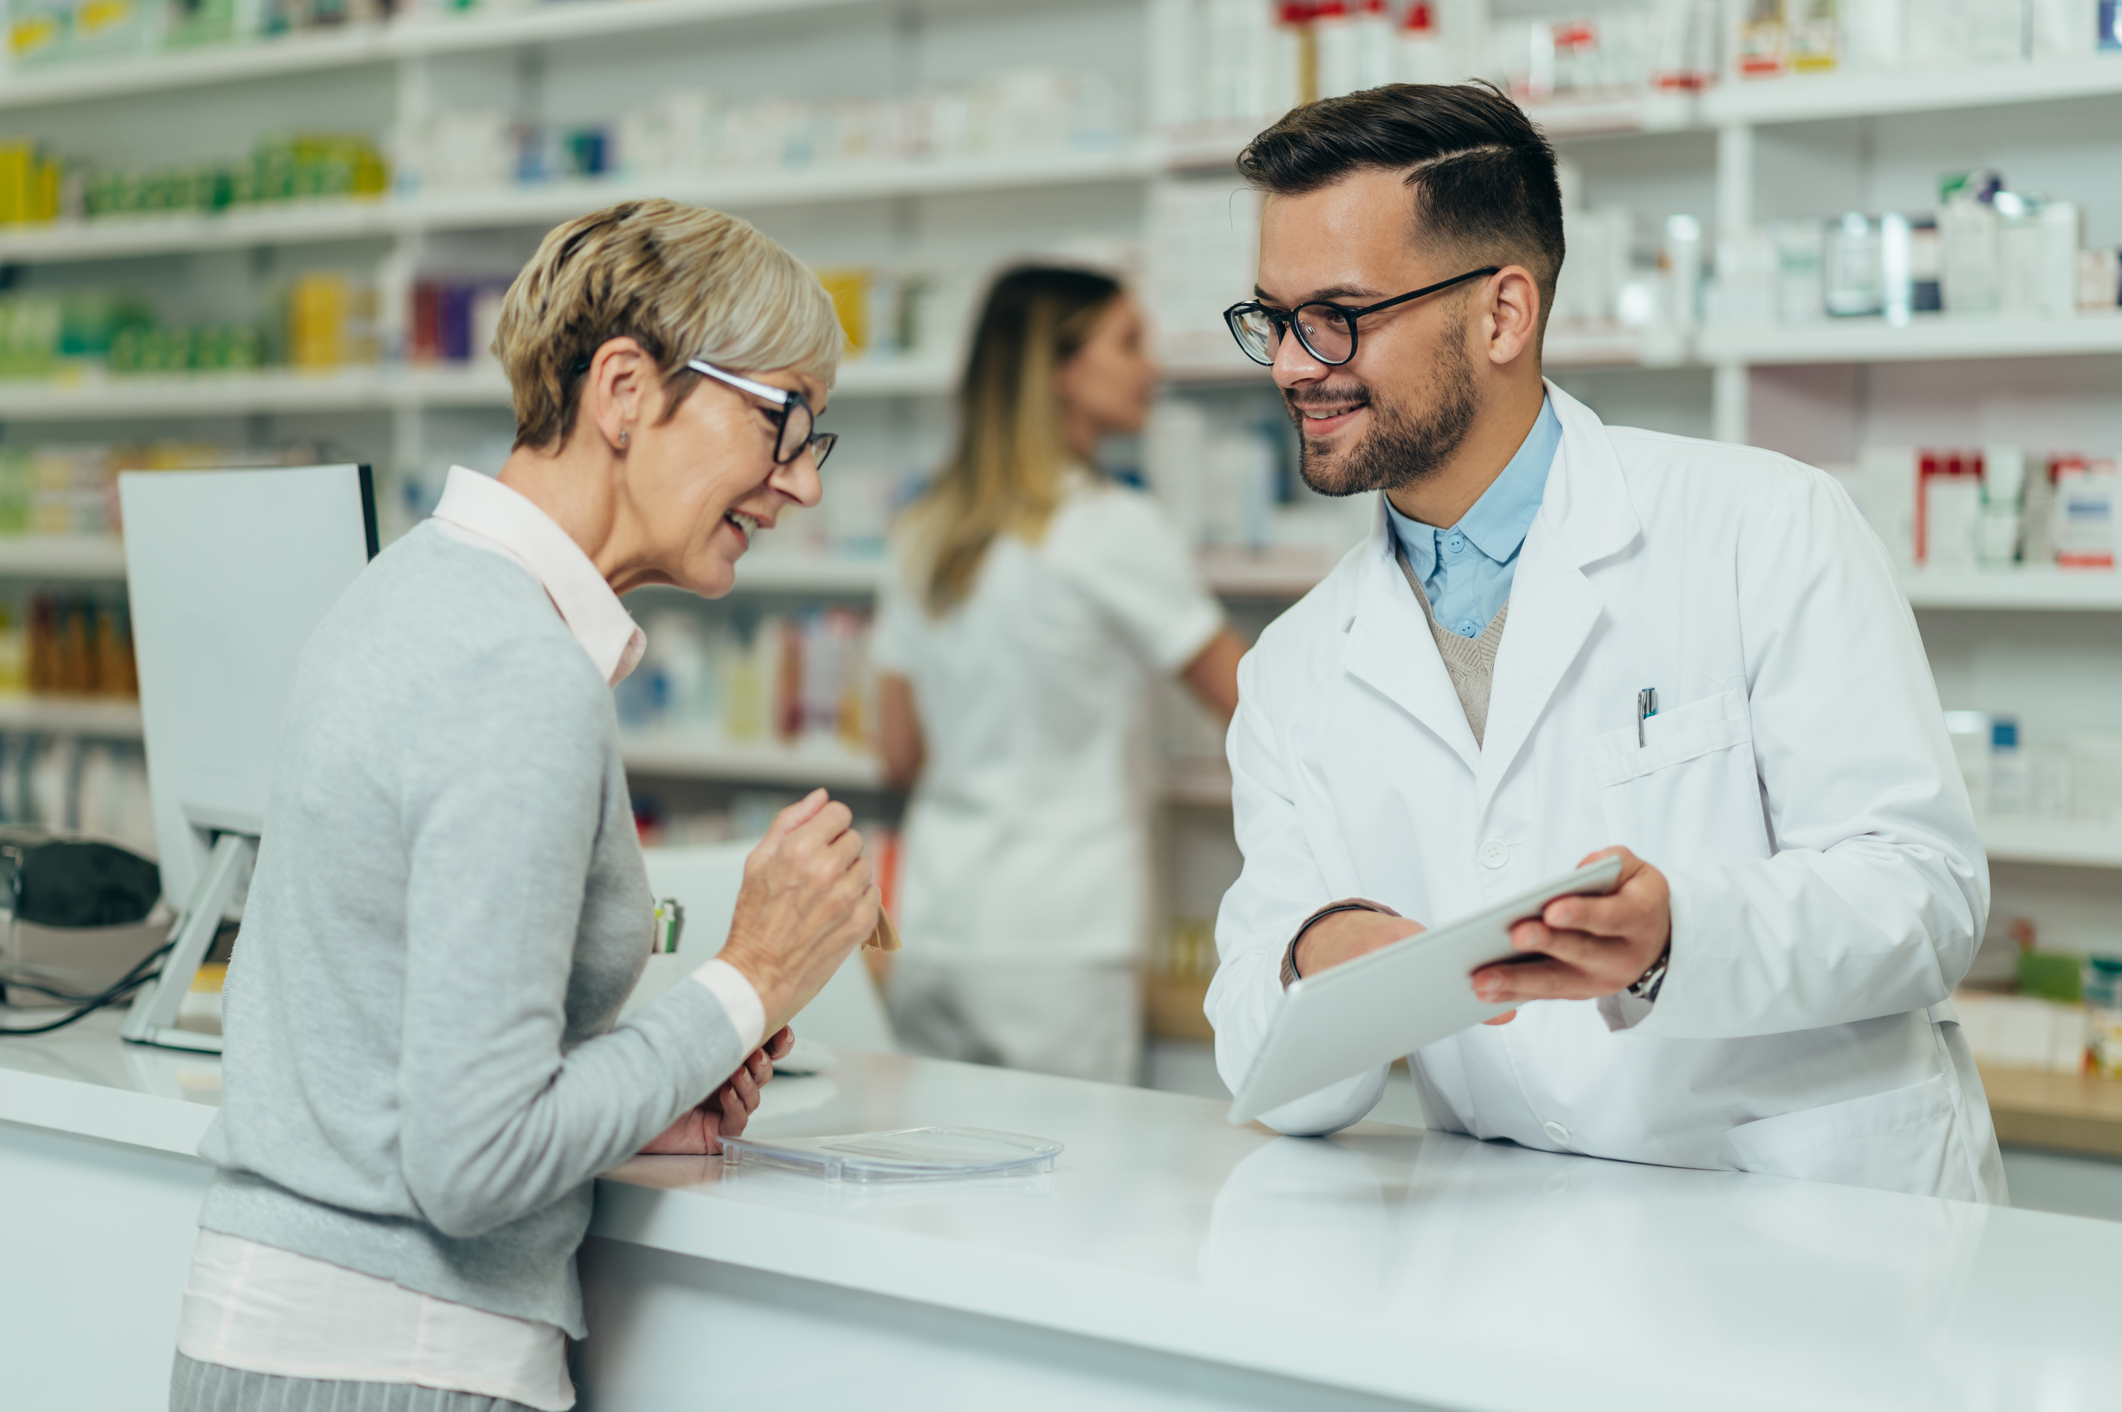 La farmacéutica apuesta por la farmacia asistencial que ofrece servicios de salud con los que acercarse al consumidor y crear un mayor vínculo con él